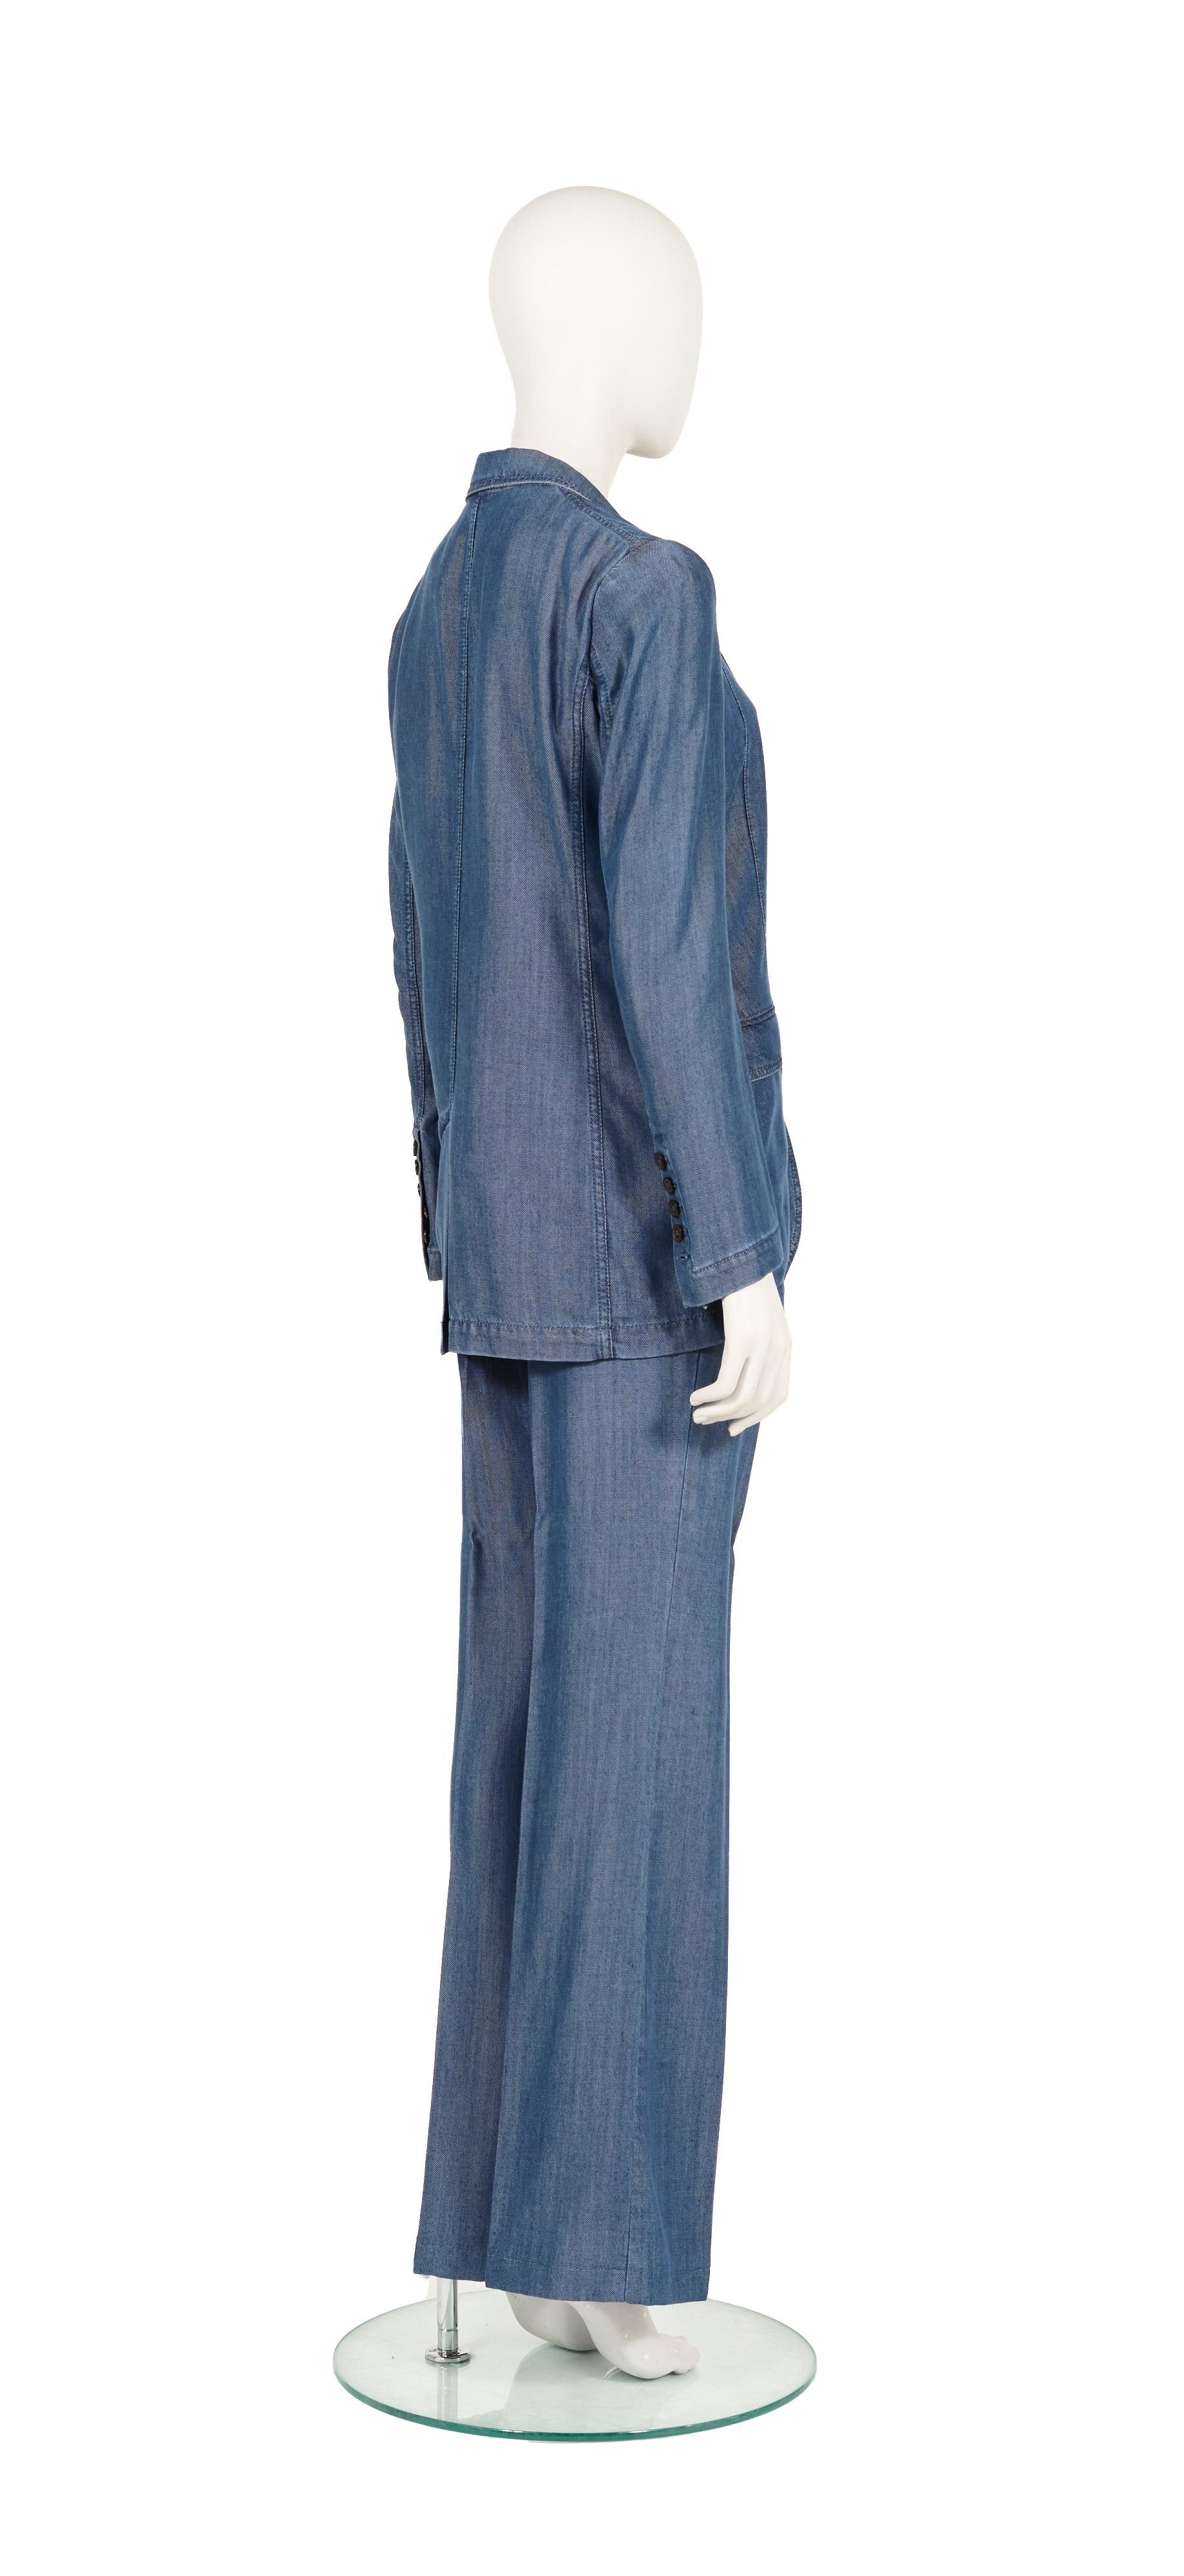 - Gucci par Frida Giannini
- Collectional 2013
- Combinaison pantalon en denim
- Blazer ajusté à simple boutonnage
- Pantalon évasé
- Taille : IT 40 (veste), IT 44 (pantalon)